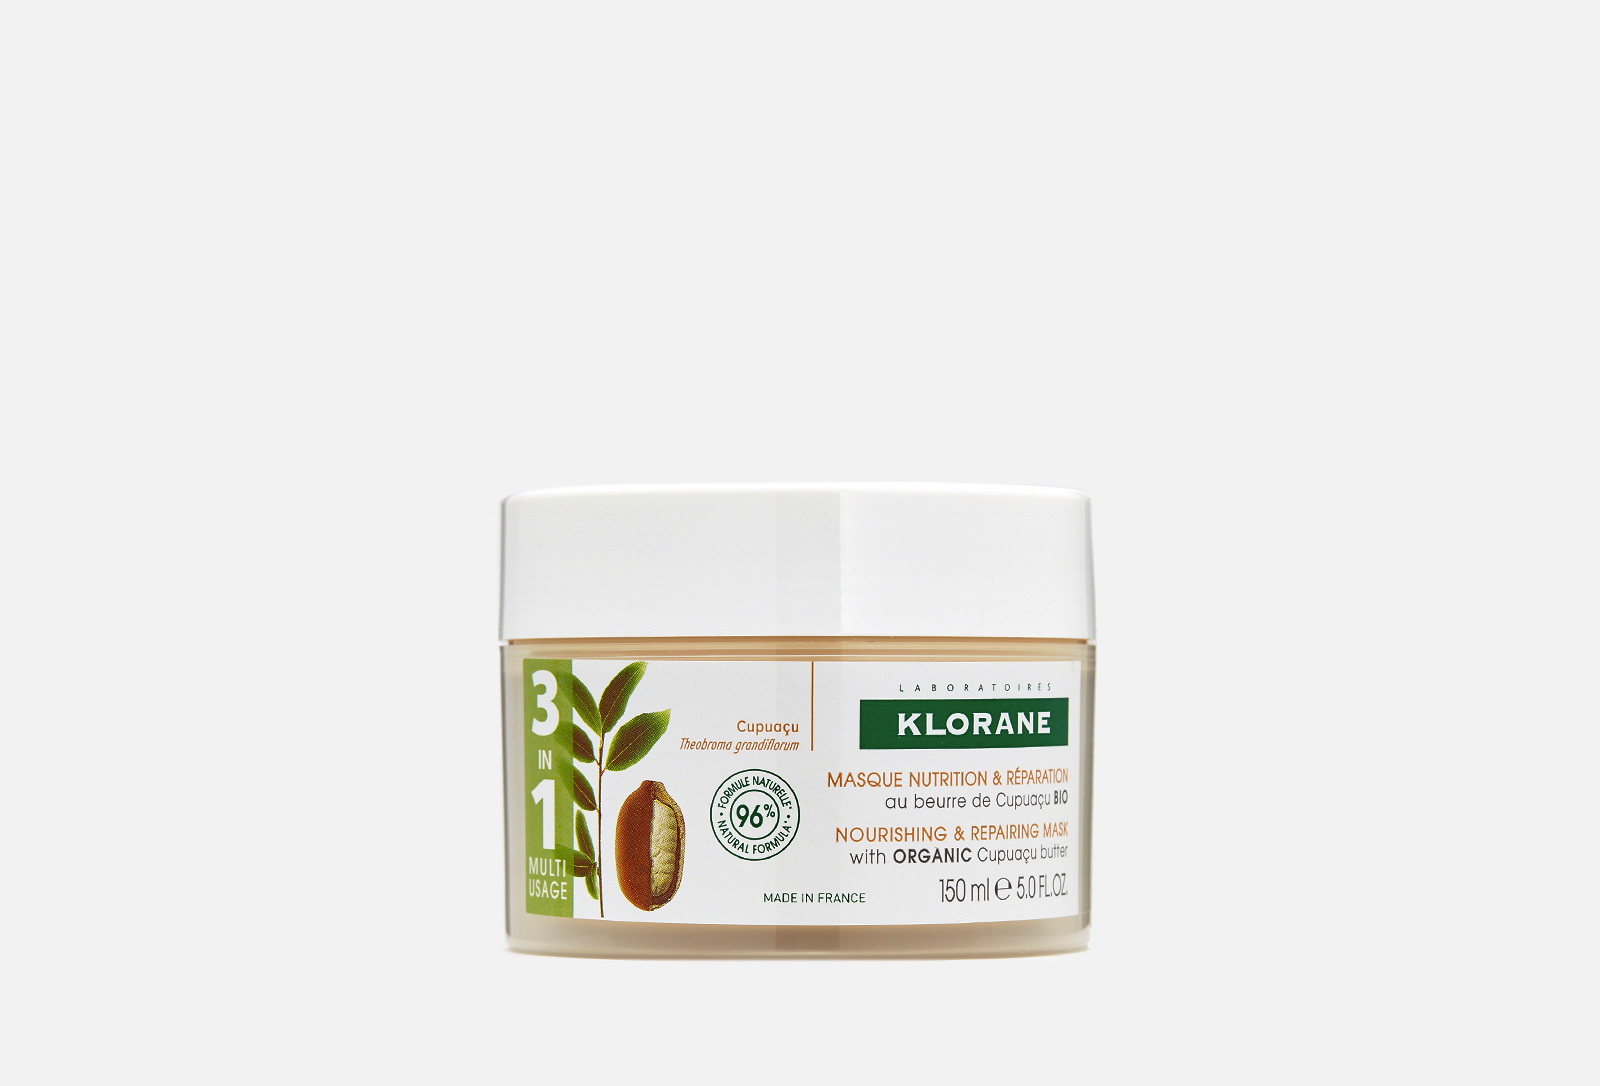 Klorane маска для волос питательная/восстанавливающая с органическим маслом купуасу 150 мл